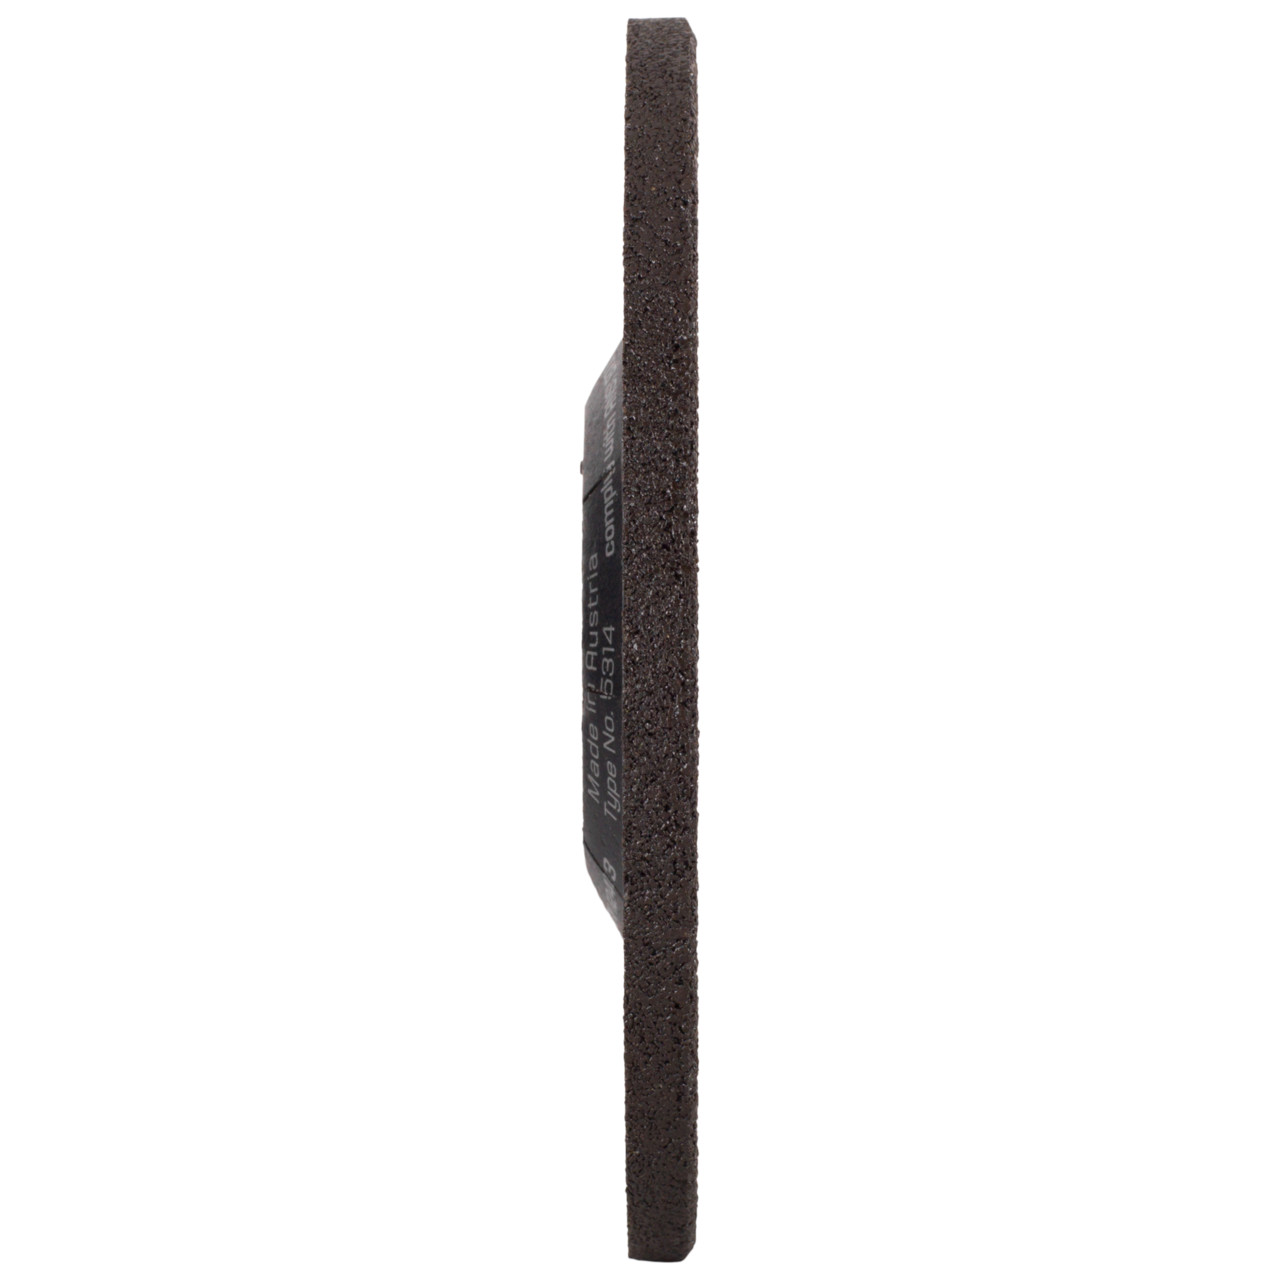 Tyrolit Grove slijpschijf DxUxH 115x7x22,23 LONGLIFE Z-MAX voor staal, vorm: 27 - offset uitvoering, Art. 34353683